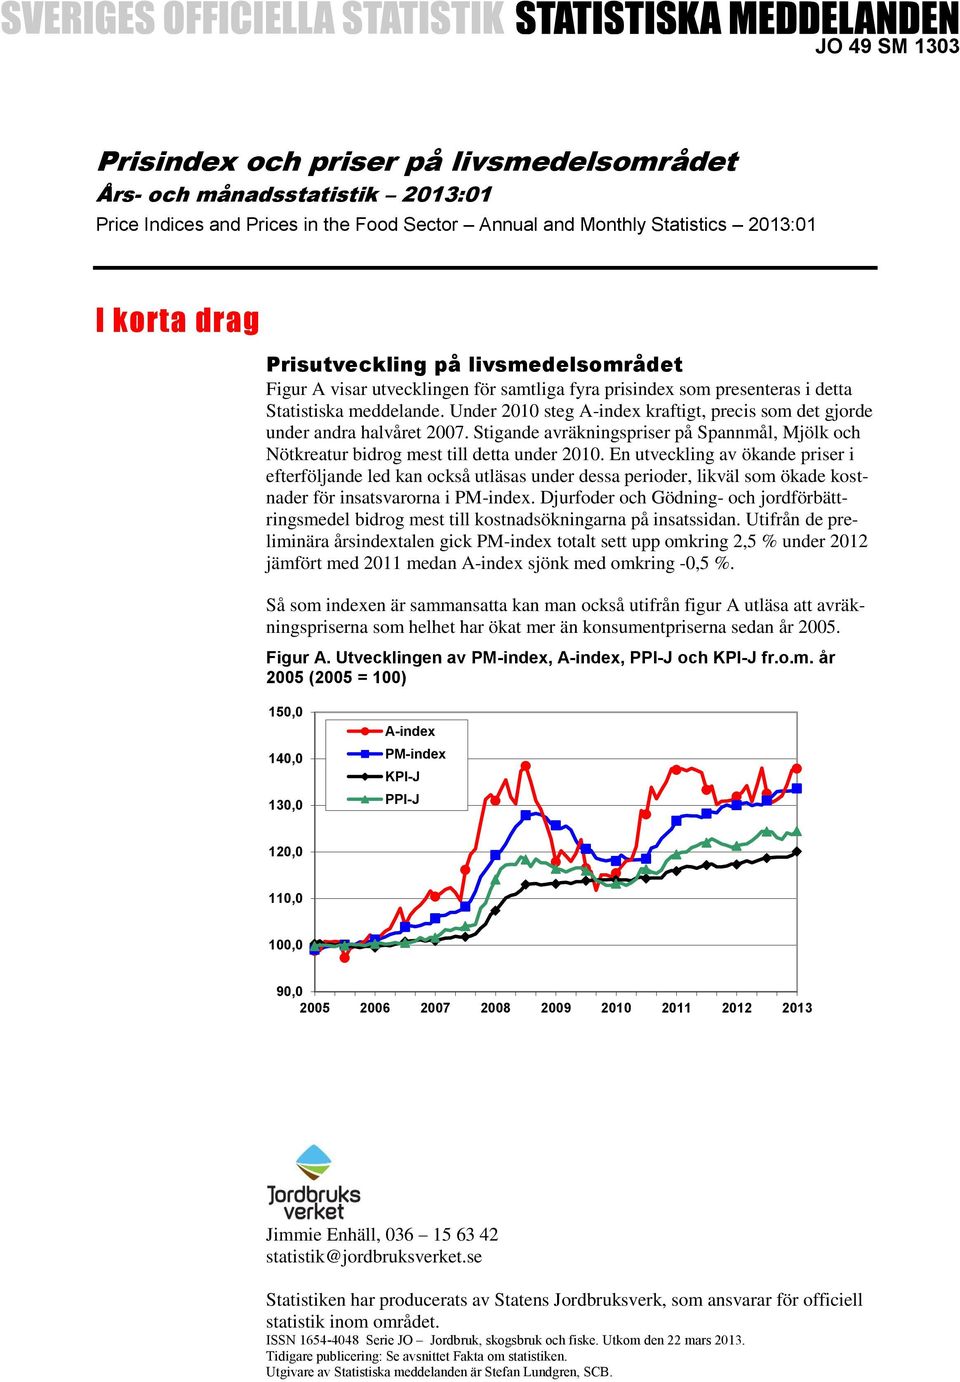 Under 2010 steg A-index kraftigt, precis som det gjorde under andra halvåret 2007. Stigande avräkningspriser på Spannmål, Mjölk och Nötkreatur bidrog mest till detta under 2010.